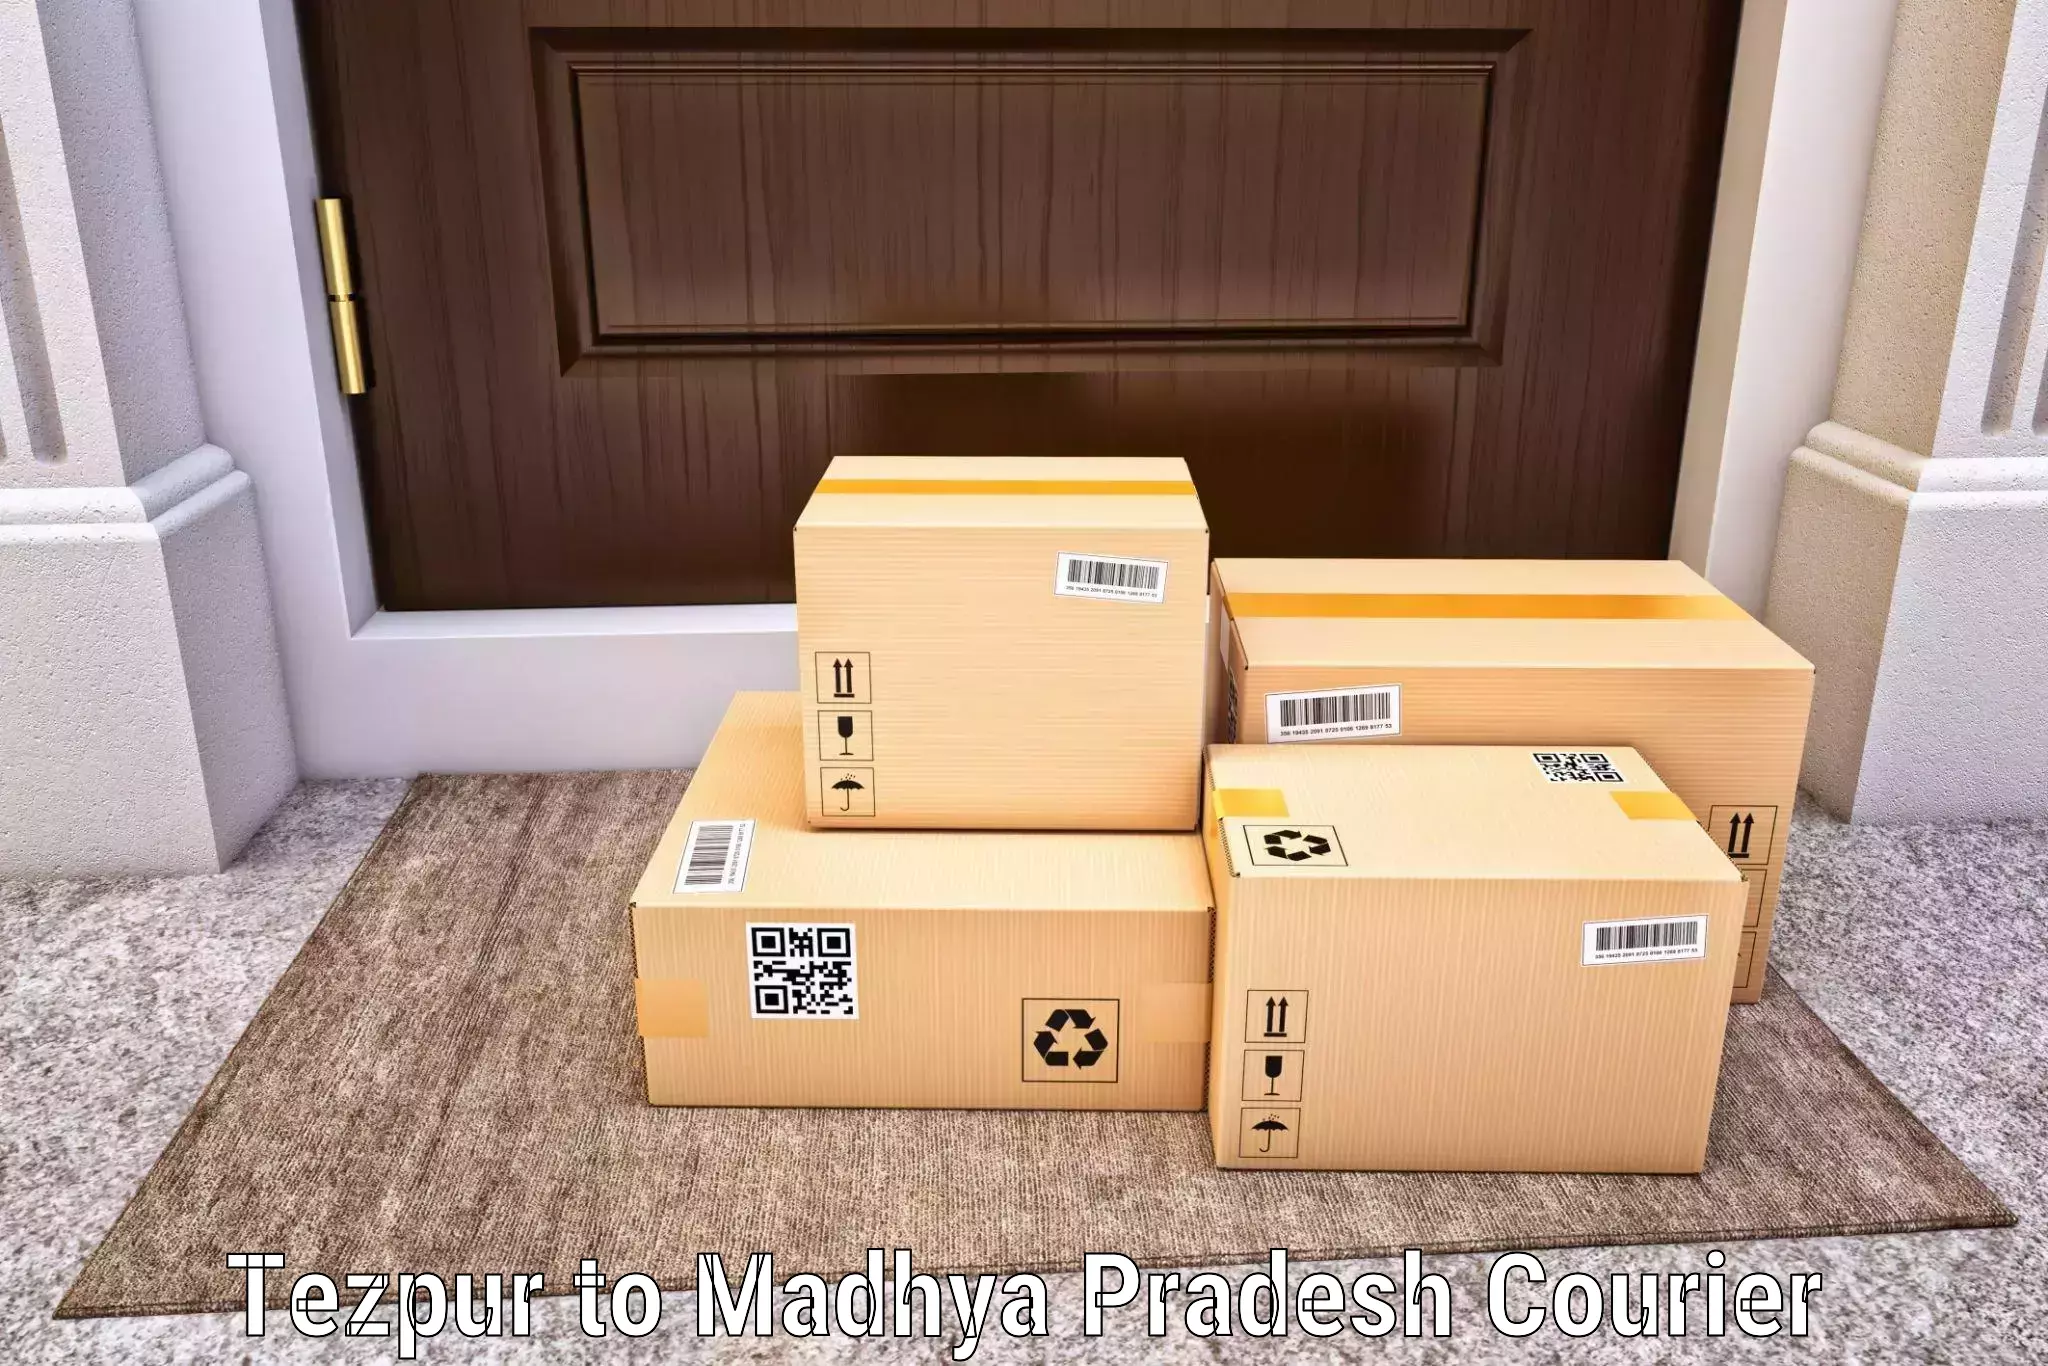 Efficient parcel delivery Tezpur to Ratlam